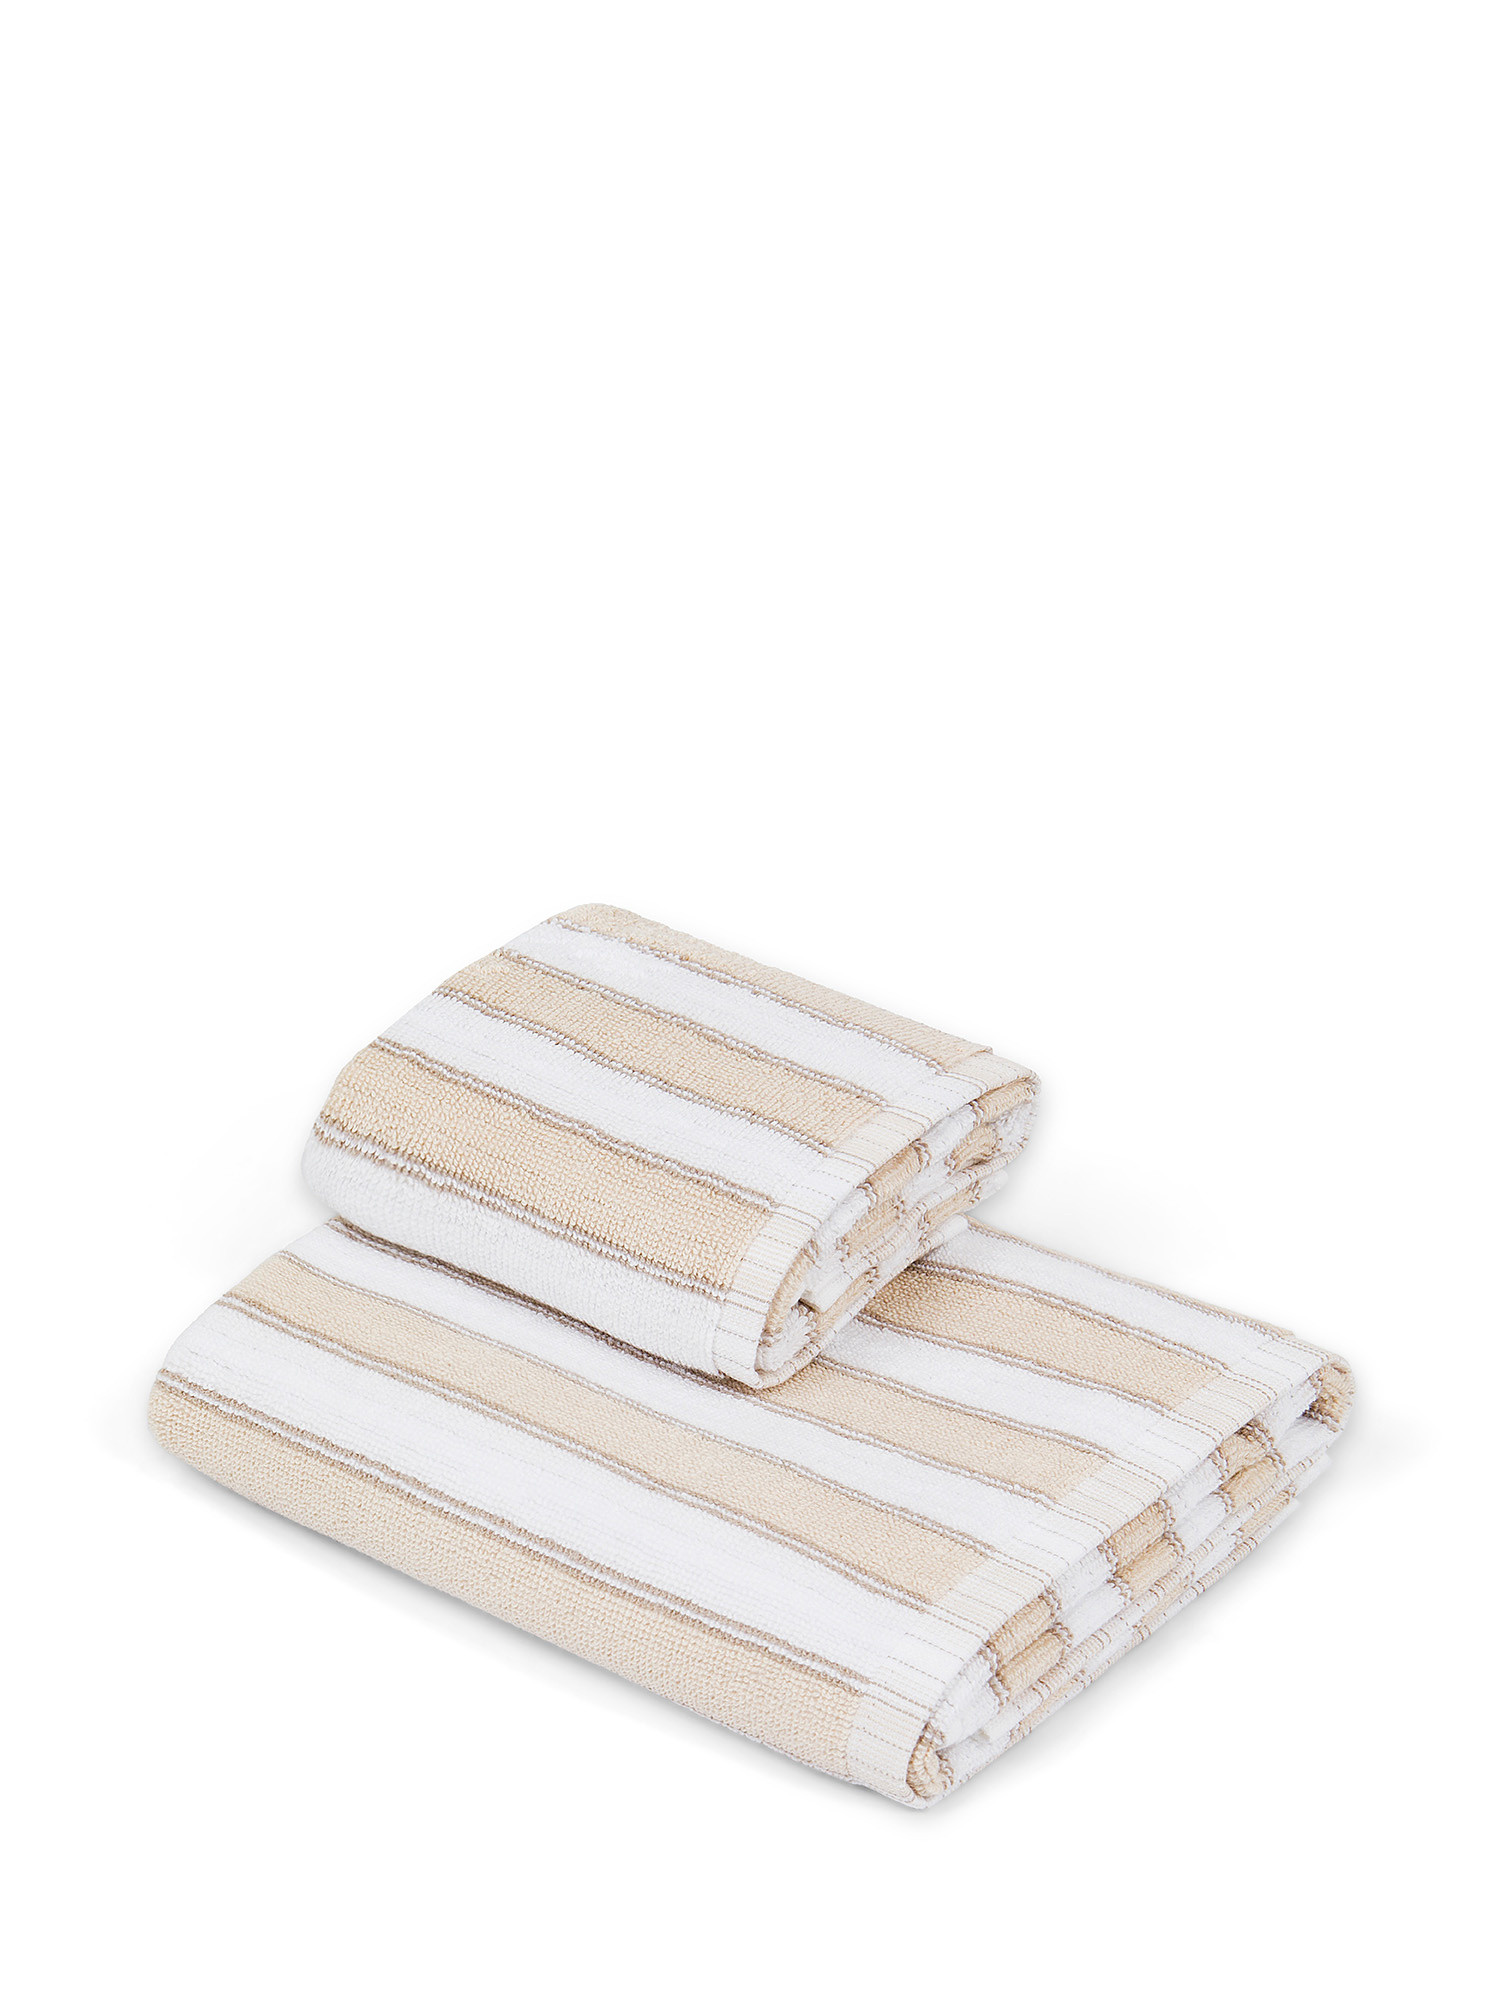 Asciugamano in spugna  di puro cotone., Beige, large image number 0